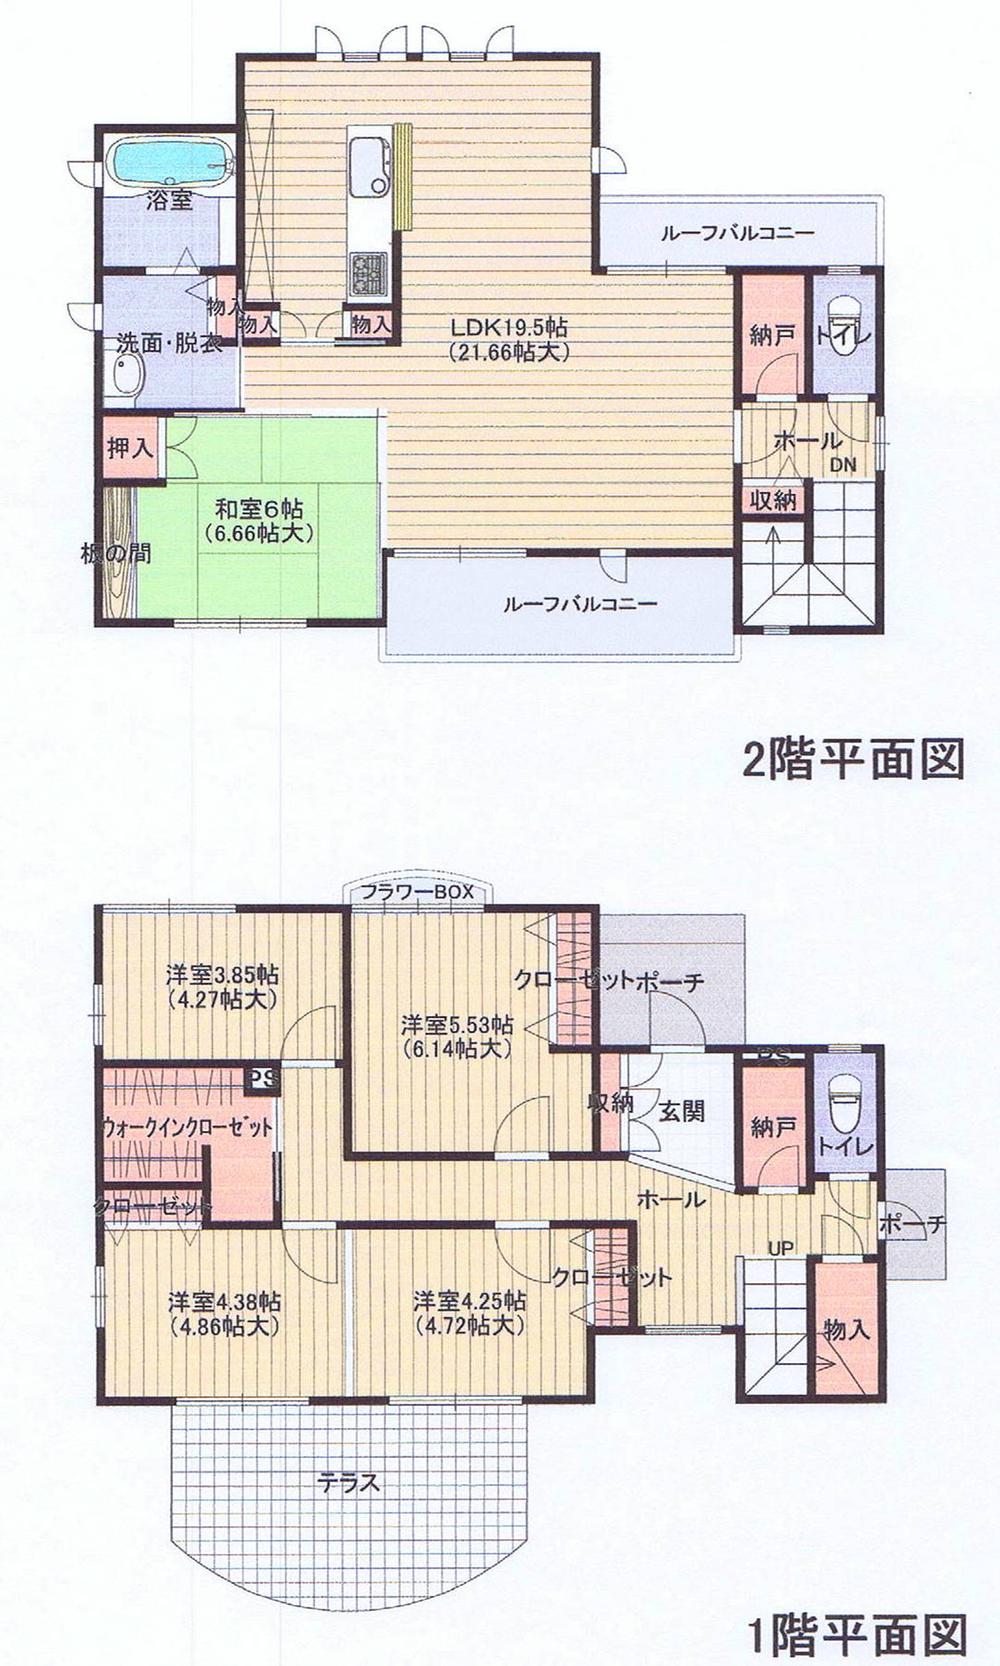 Floor plan. 29,800,000 yen, 5LDK + 3S (storeroom), Land area 232.23 sq m , Building area 138.34 sq m